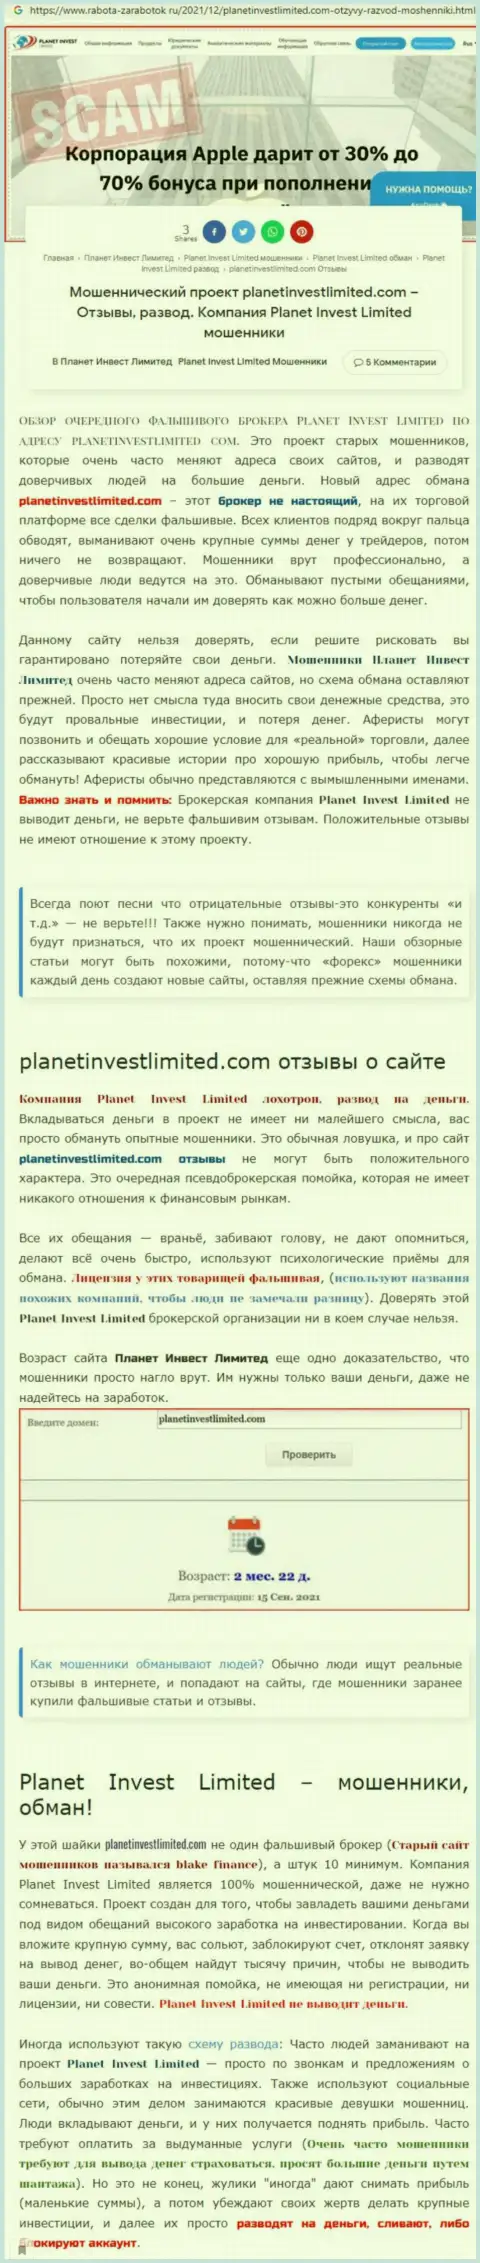 Не опасно ли совместно работать с организацией PlanetInvest Limited ? (Обзор неправомерных действий компании)